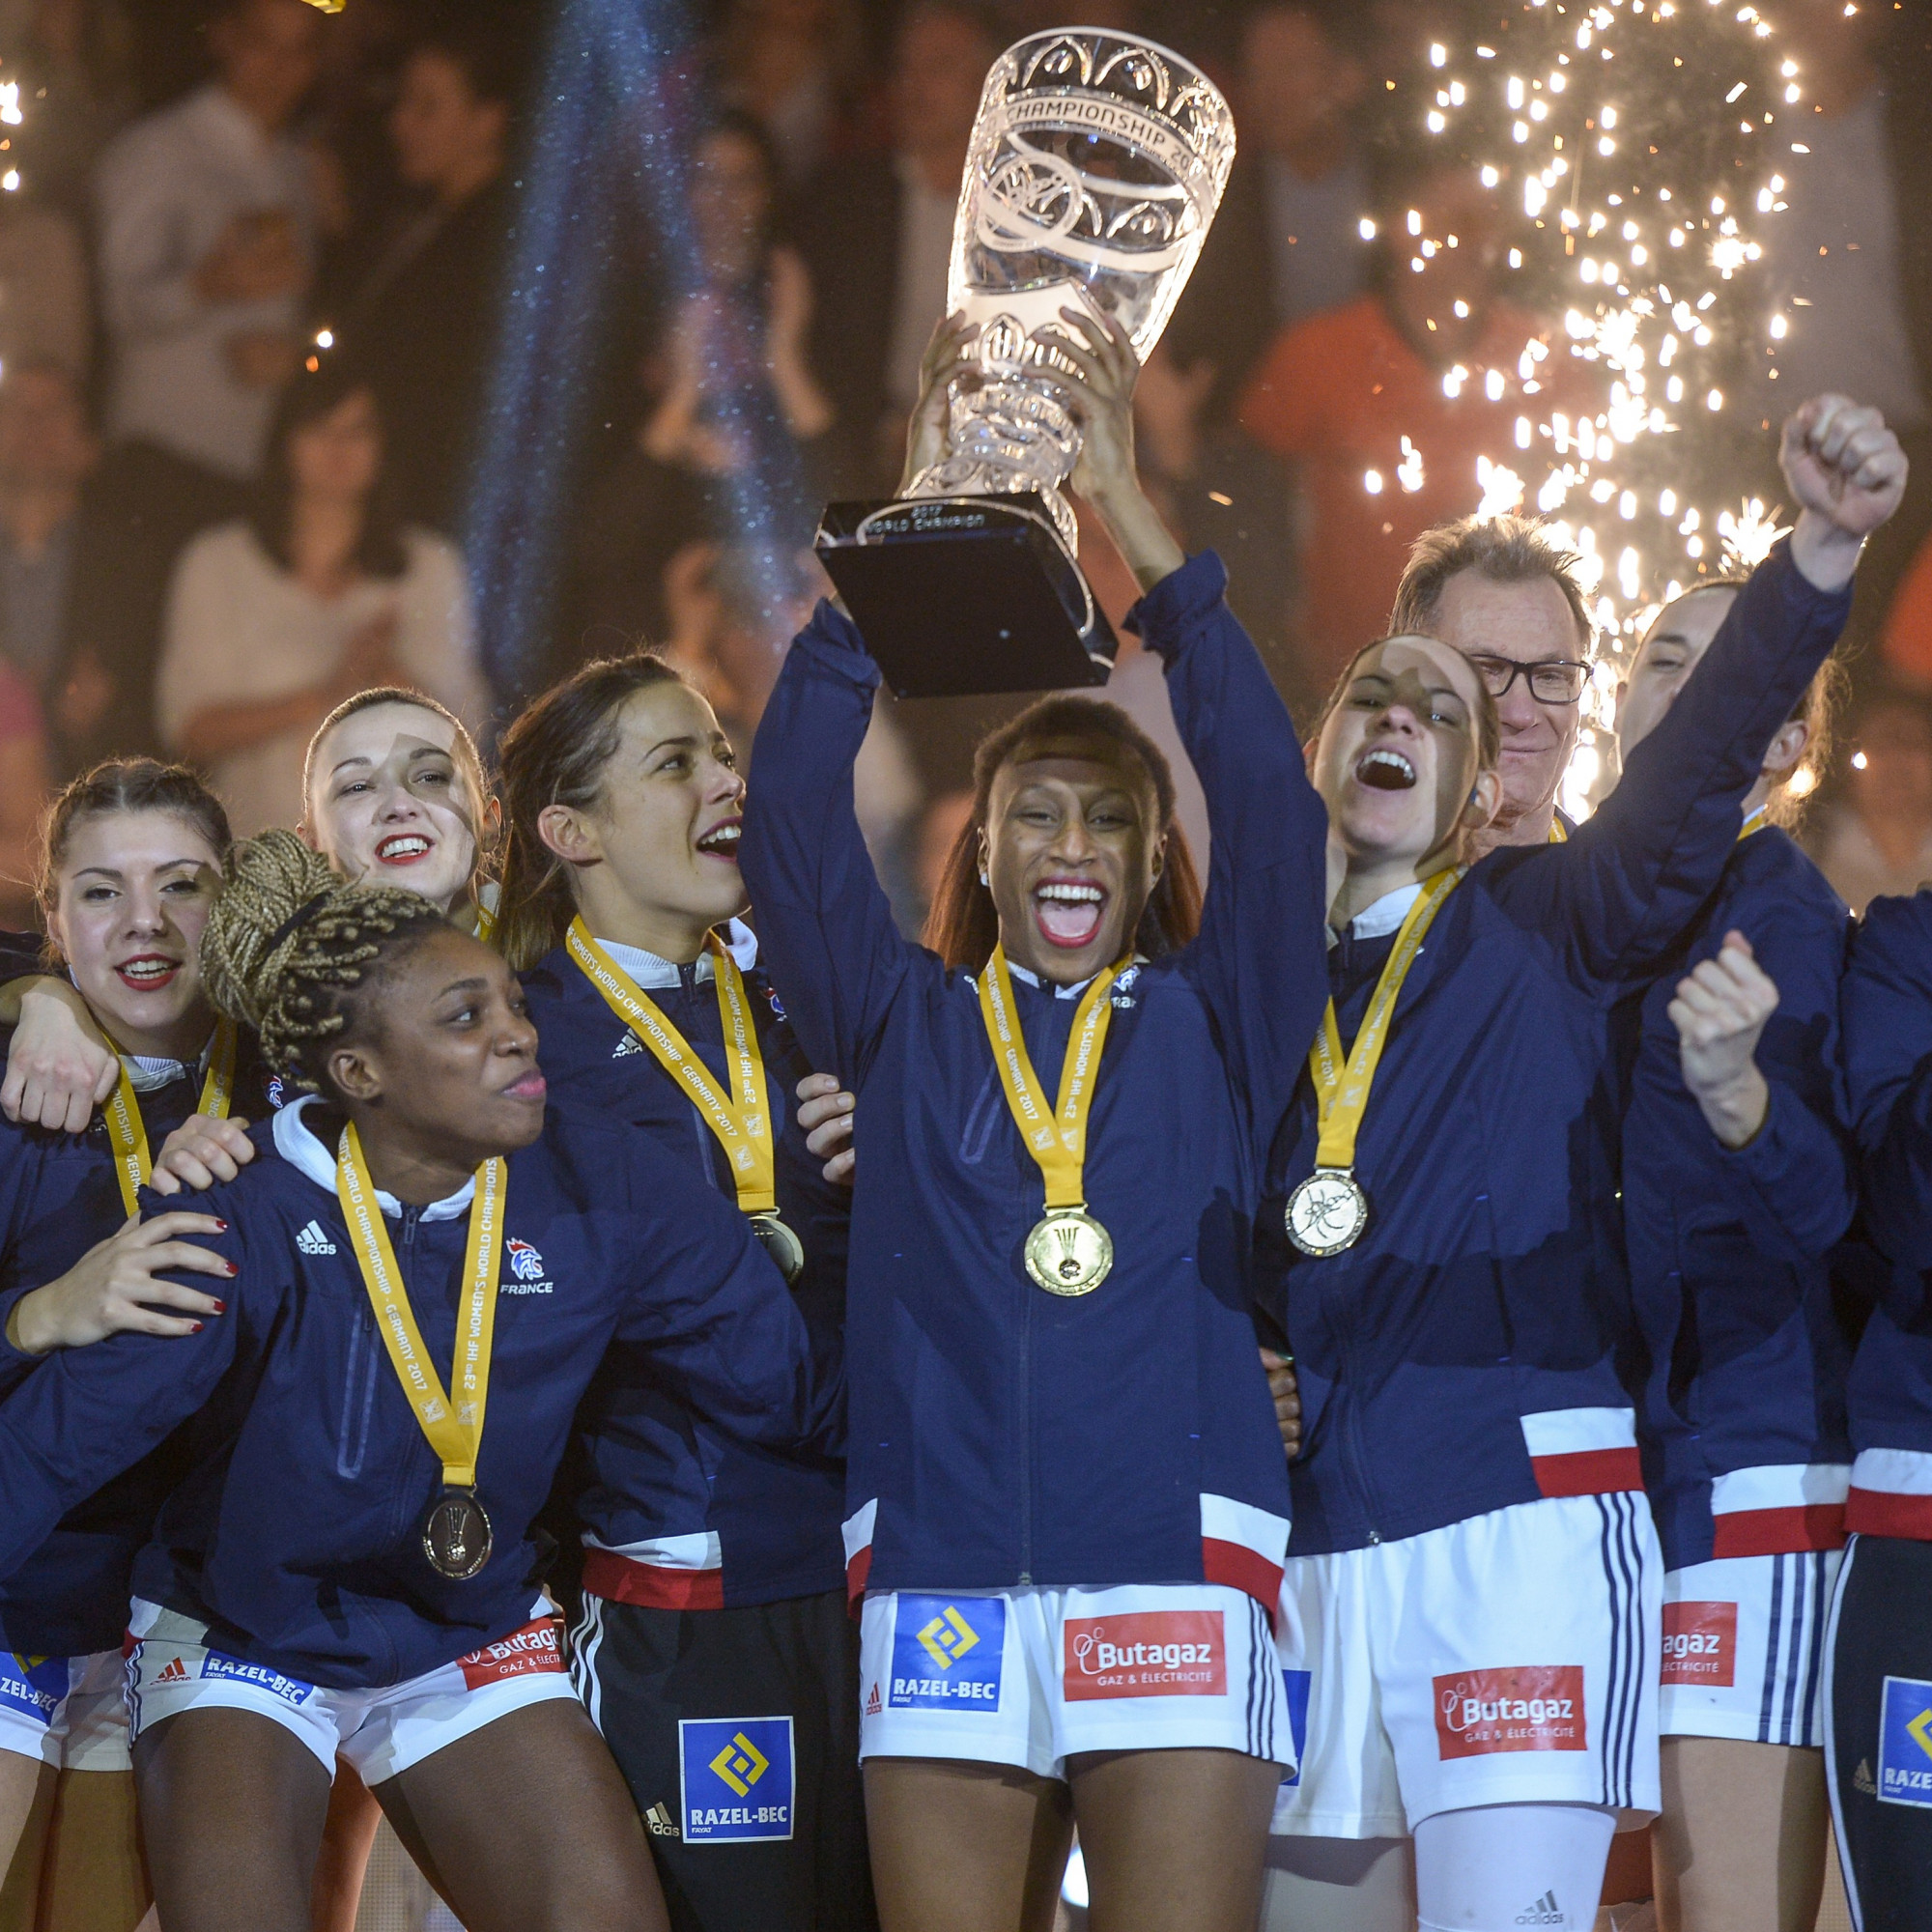 Les françaises aspirent à un troisieme titre aprés ceux de 2003 et 2017